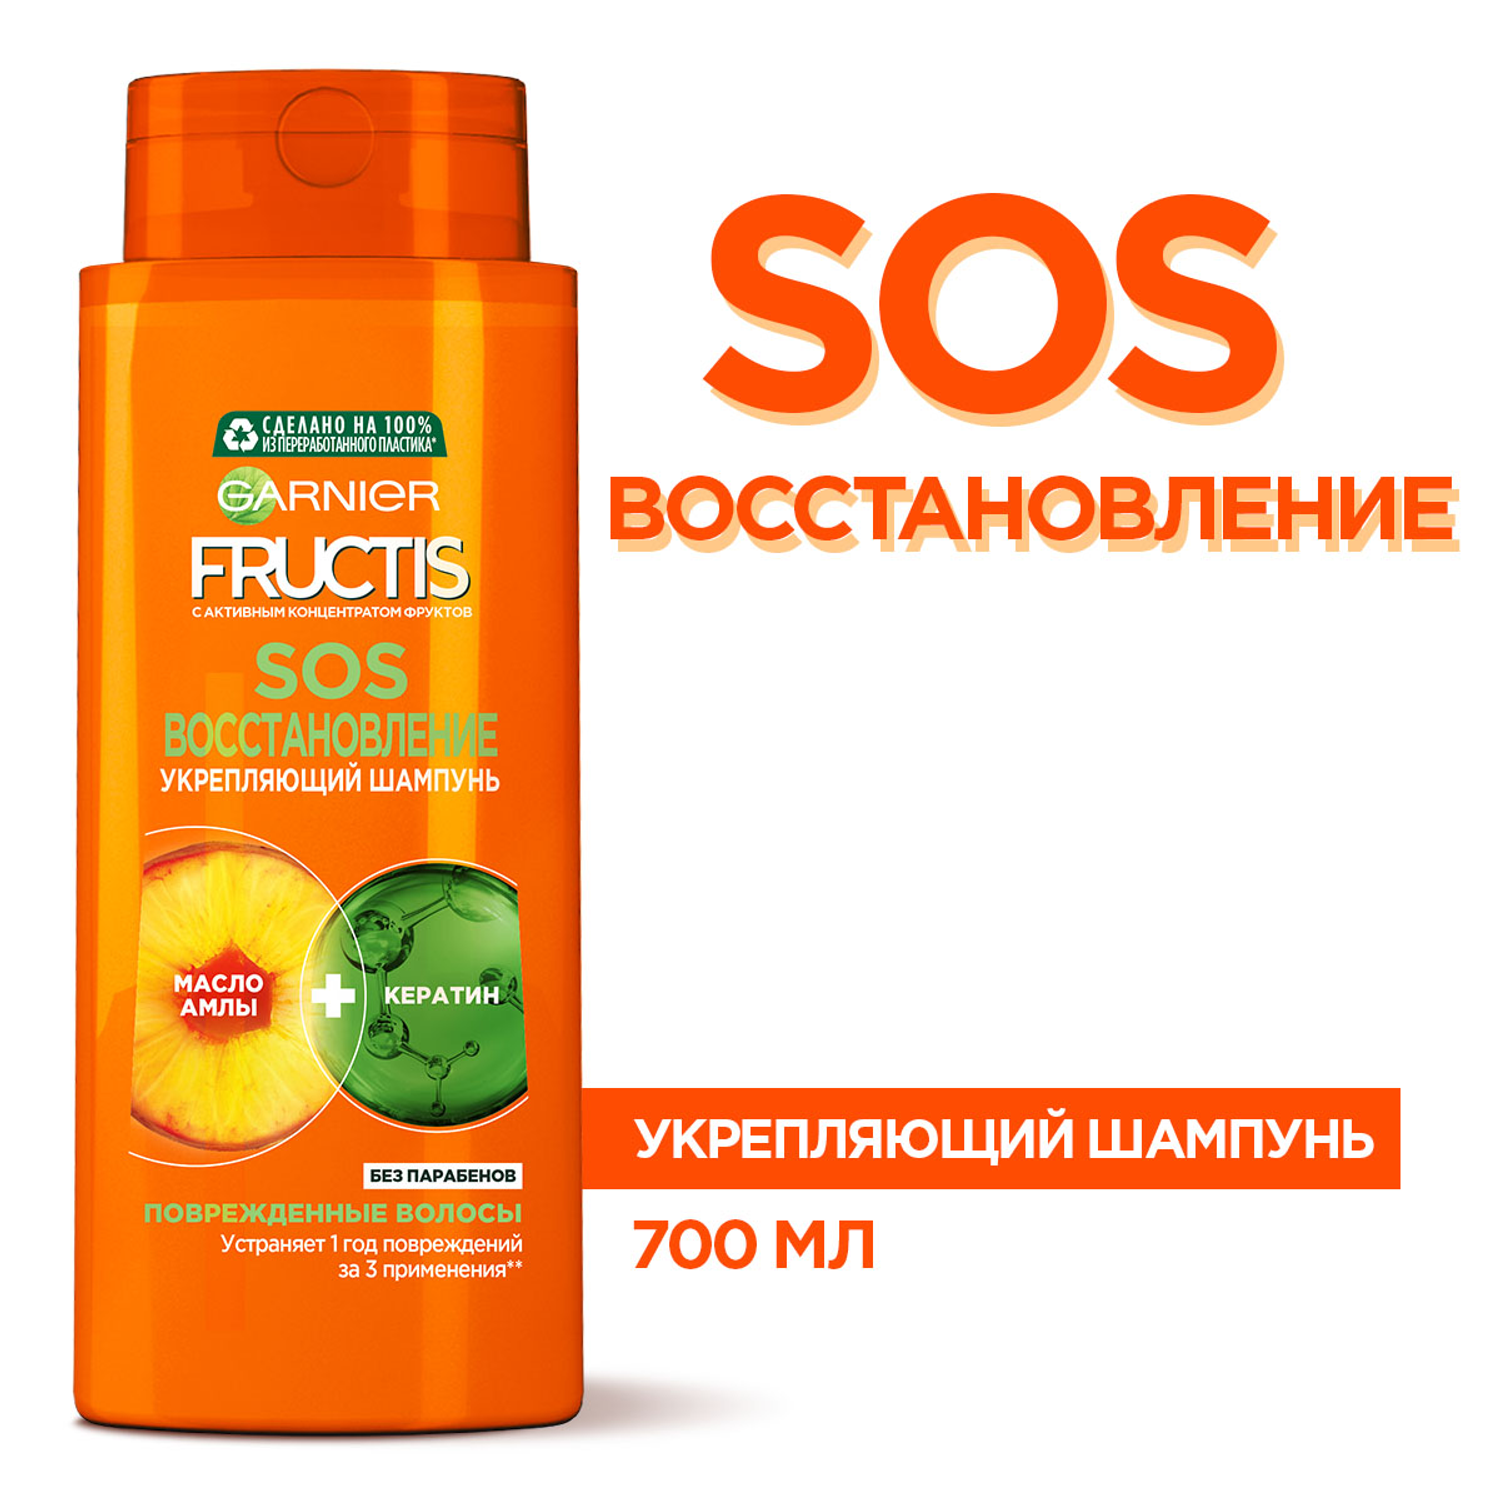 Шампунь для волос Garnier Fructis SOS Восстановление 700 мл - фото 3